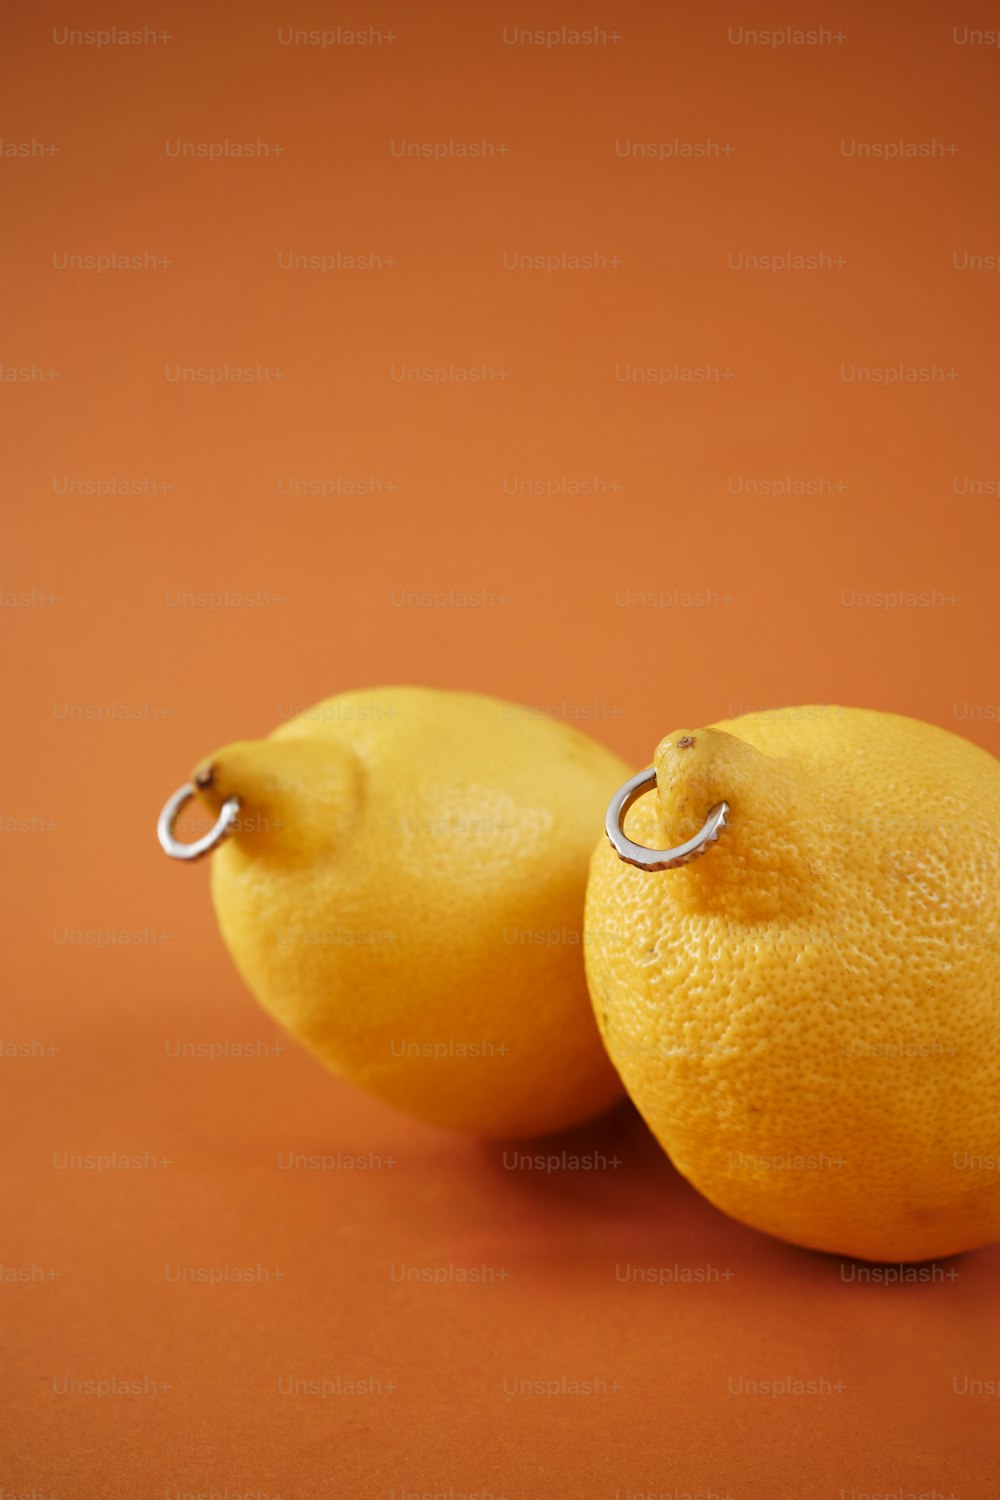 테이블 위에 나란히 놓인 레몬 두 개